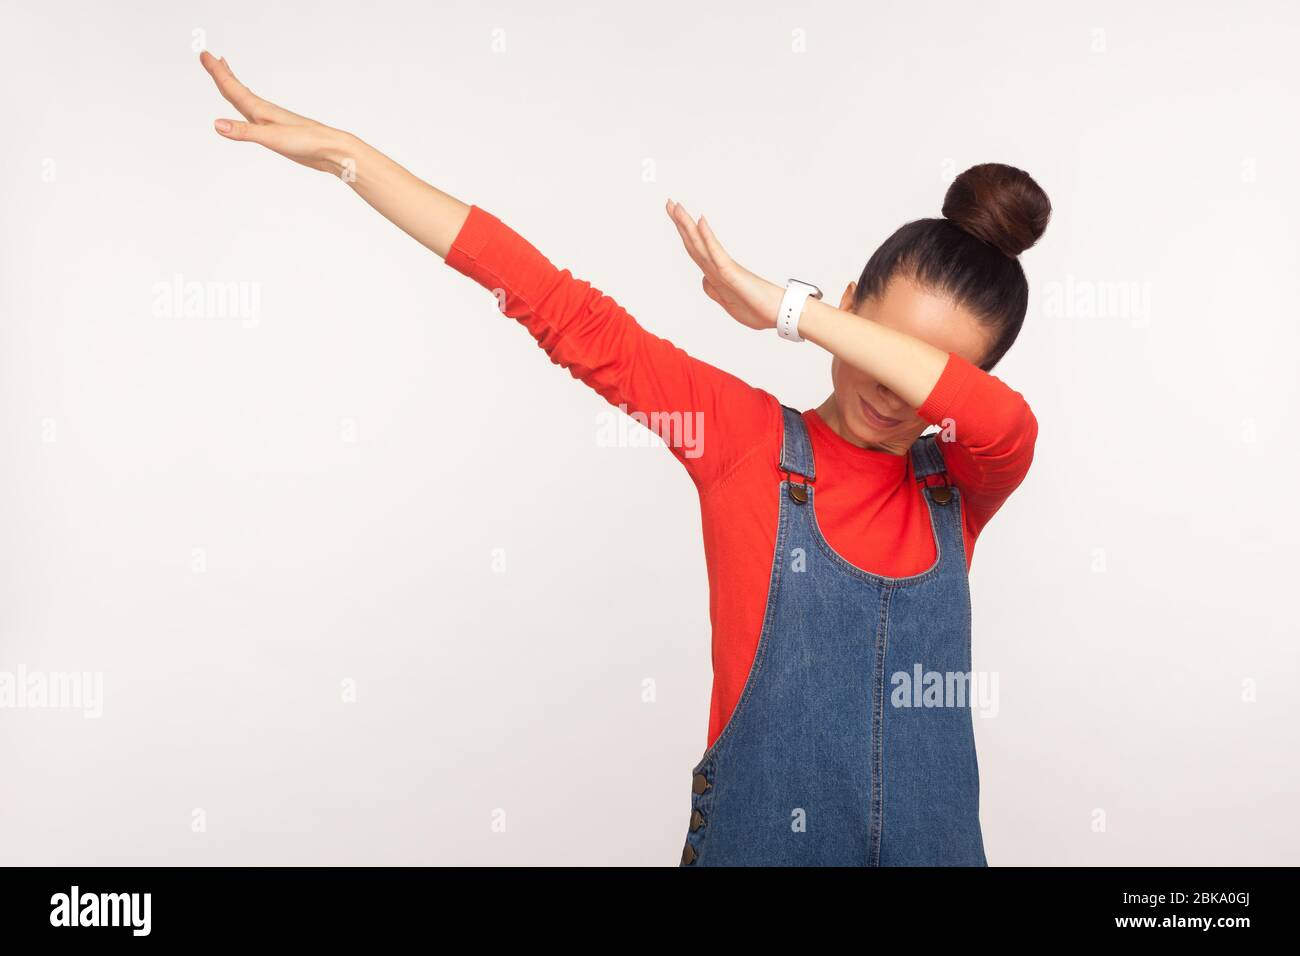 Victoire, geste de succès. Portrait d'une fille élégante avec un pain aux cheveux dans des combinaisons en denim montrant une posture de danse dab, des souvenirs Internet célèbres, exécutant un tr de dabbing Banque D'Images